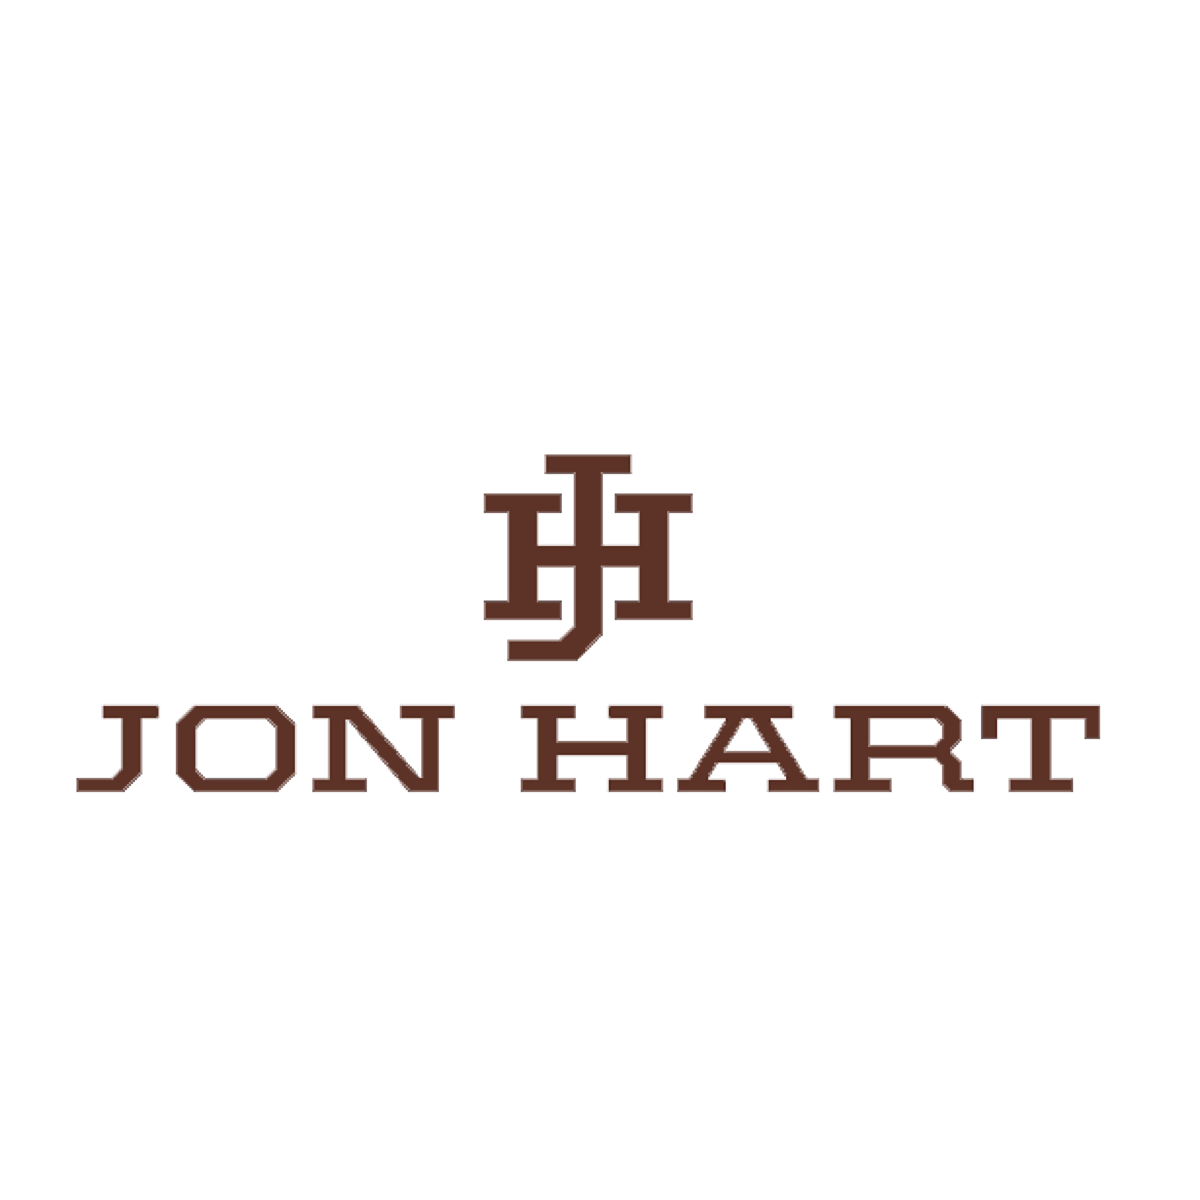 Jon Hart